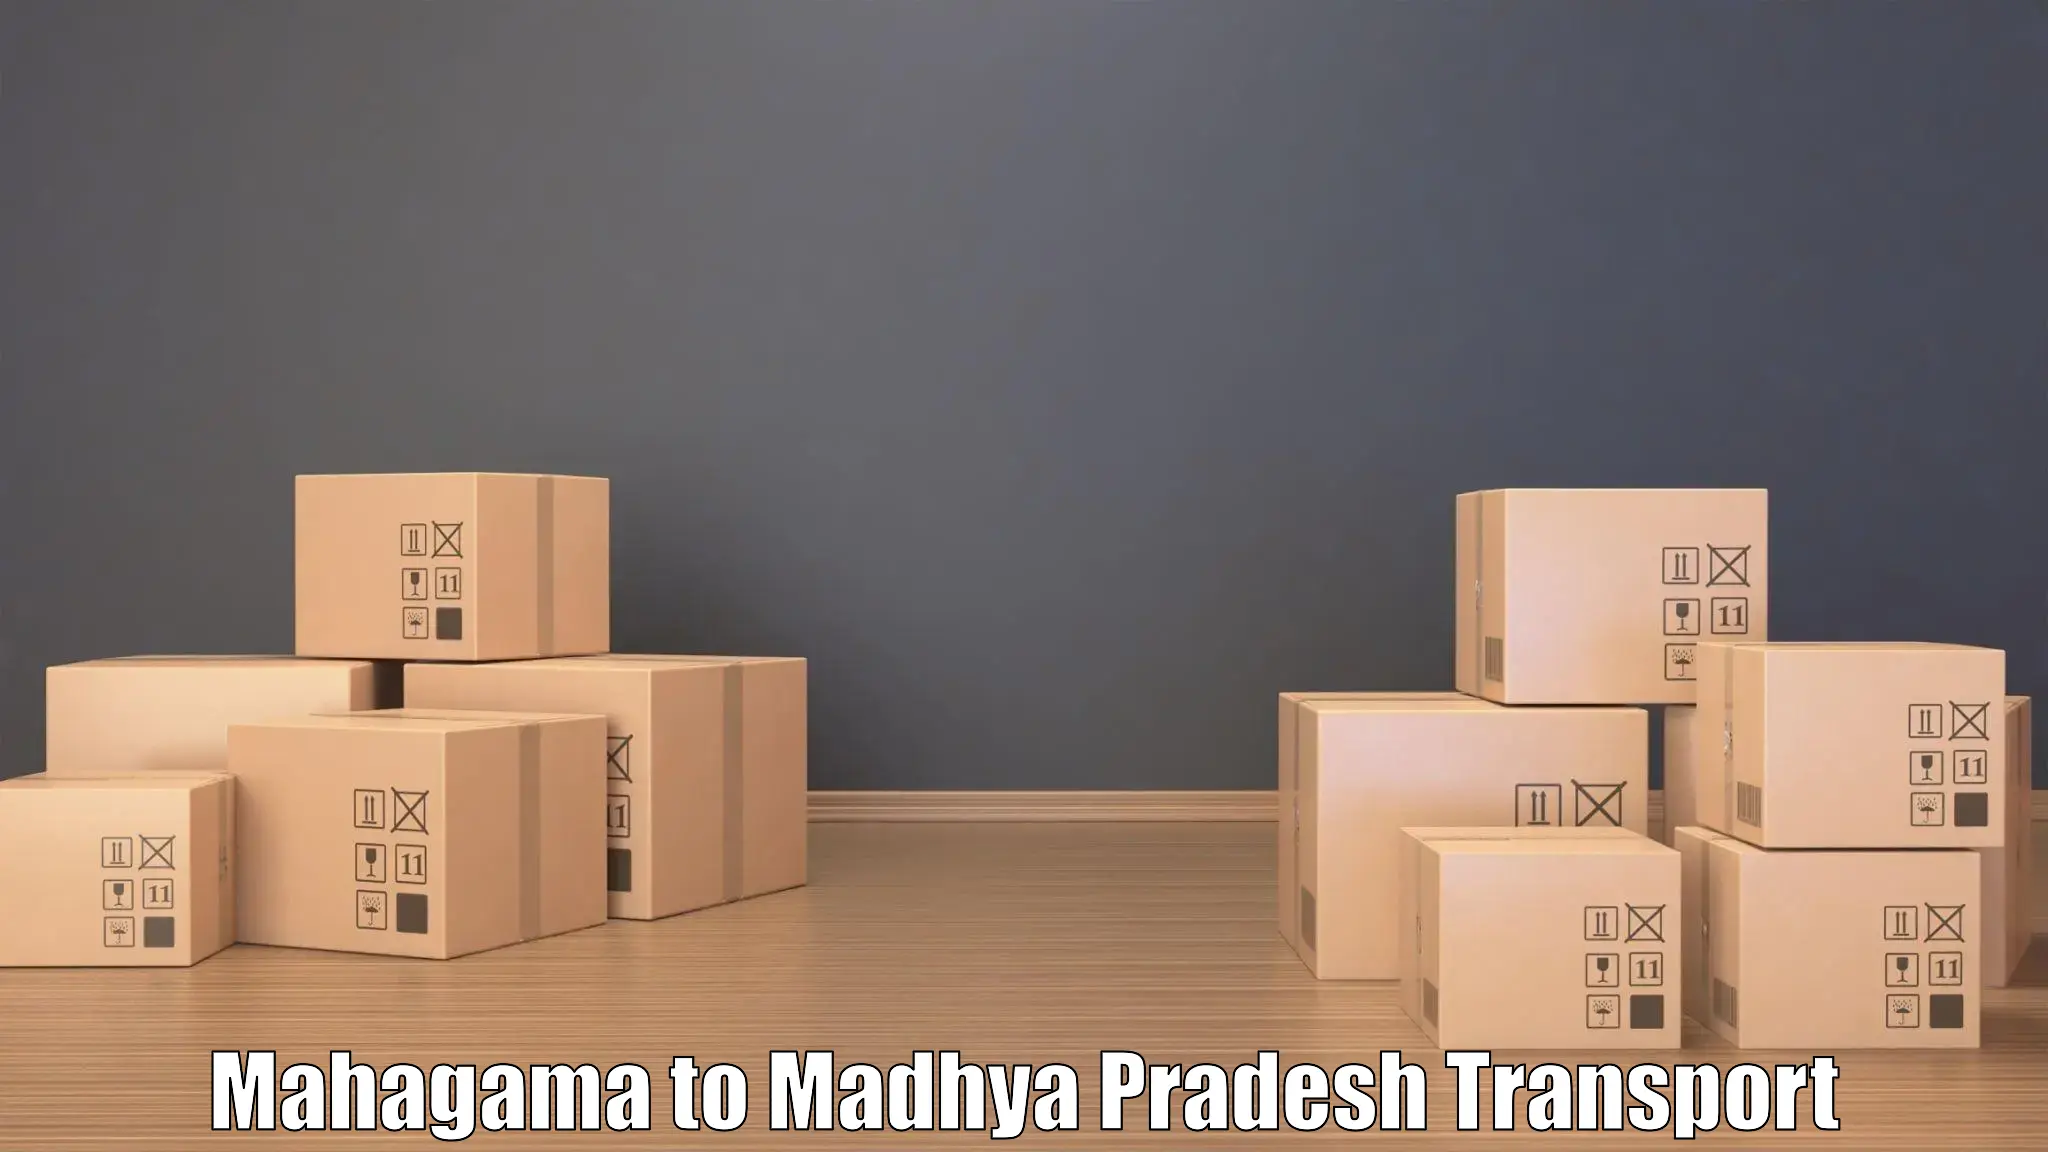 Transportation services Mahagama to Maheshwar